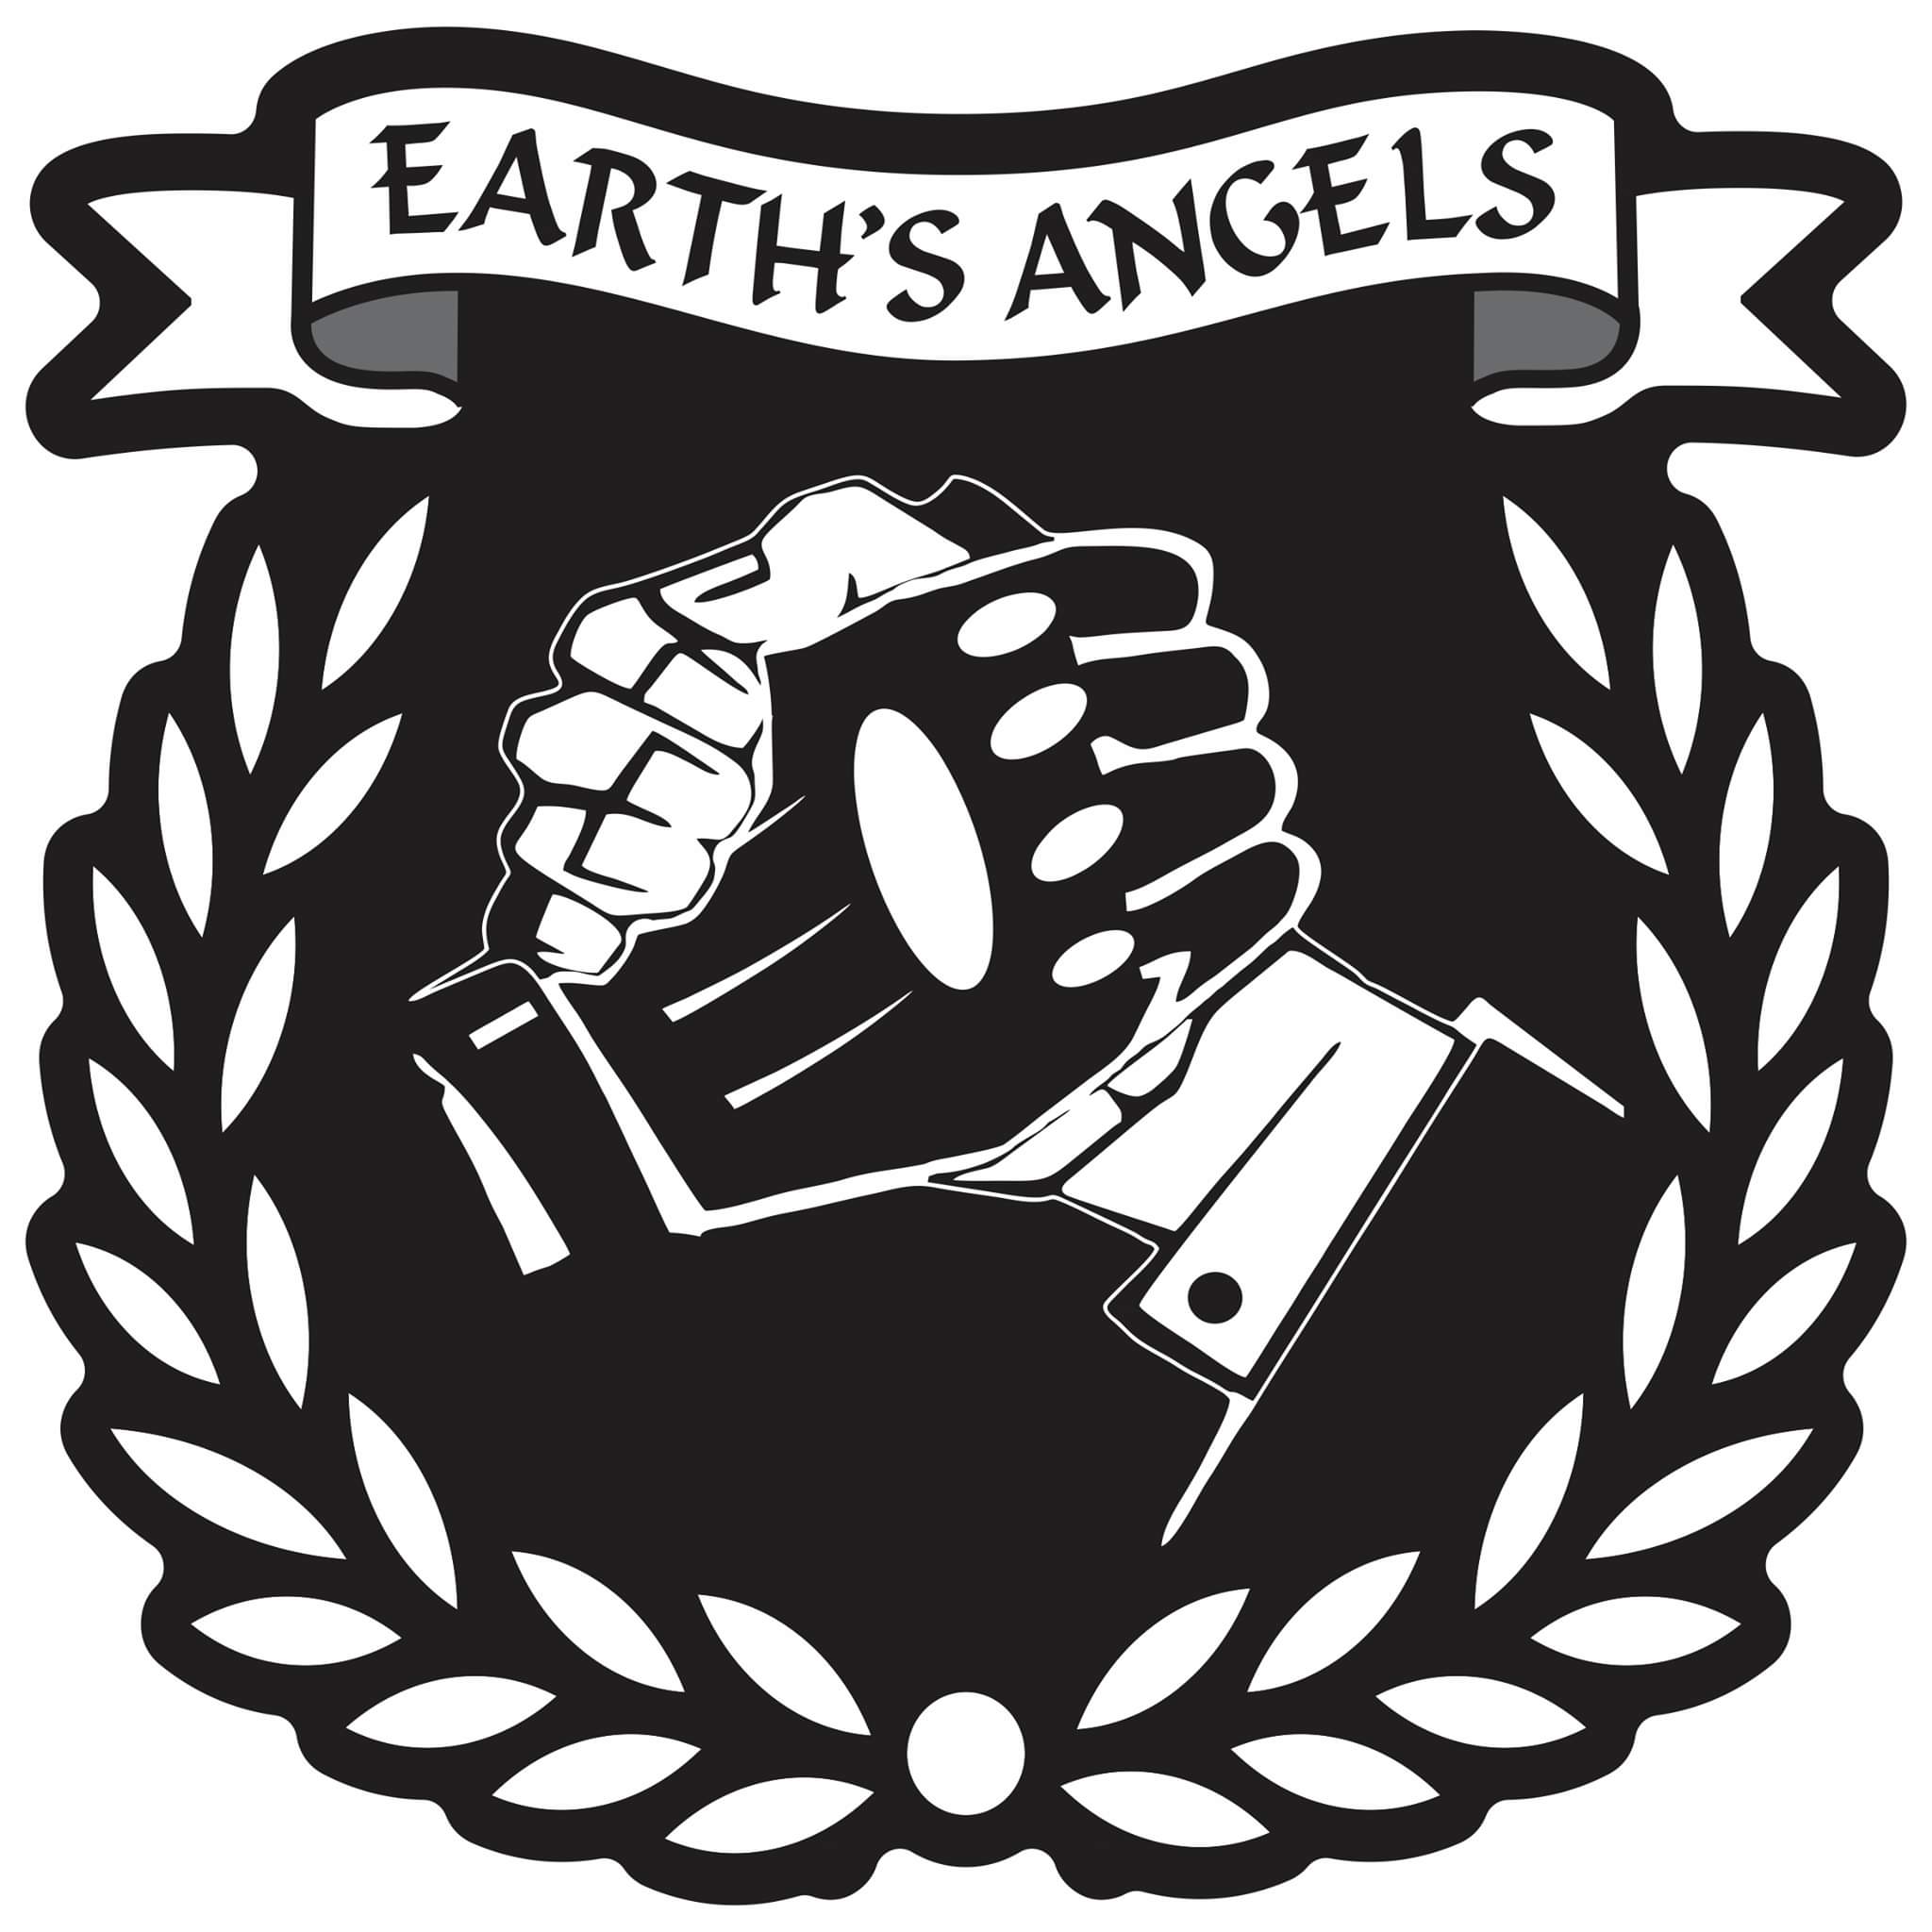 Asociatia Earth's Angels logo